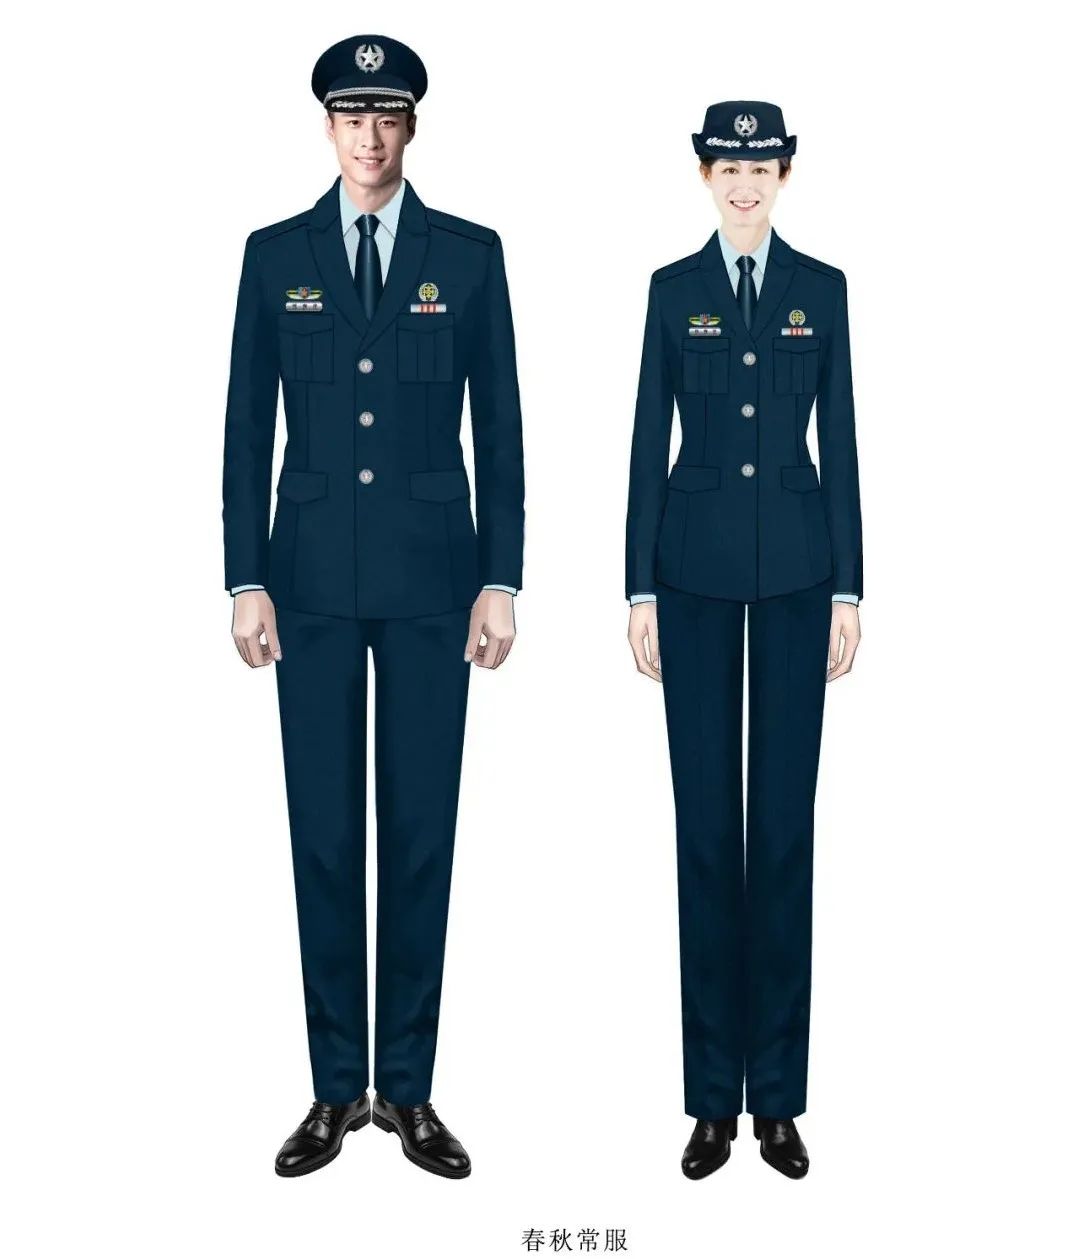 【军队文职】速看!新时代军队文职人员标志服饰,你想拥有吗?